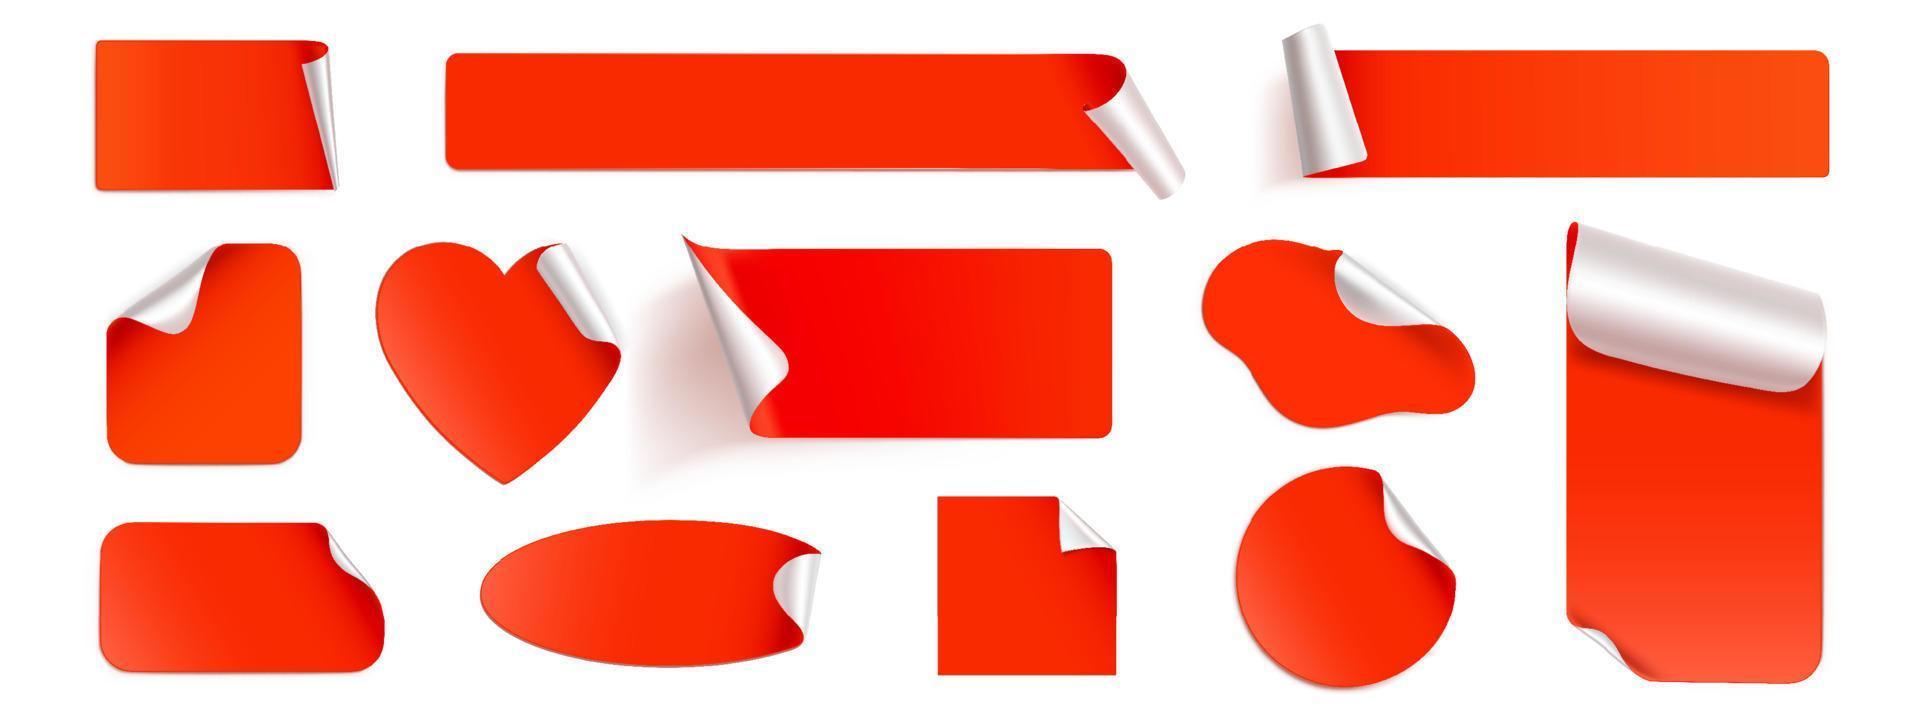 pegatinas rojas, maqueta de parches de papel de aluminio o papel, etiquetas vector